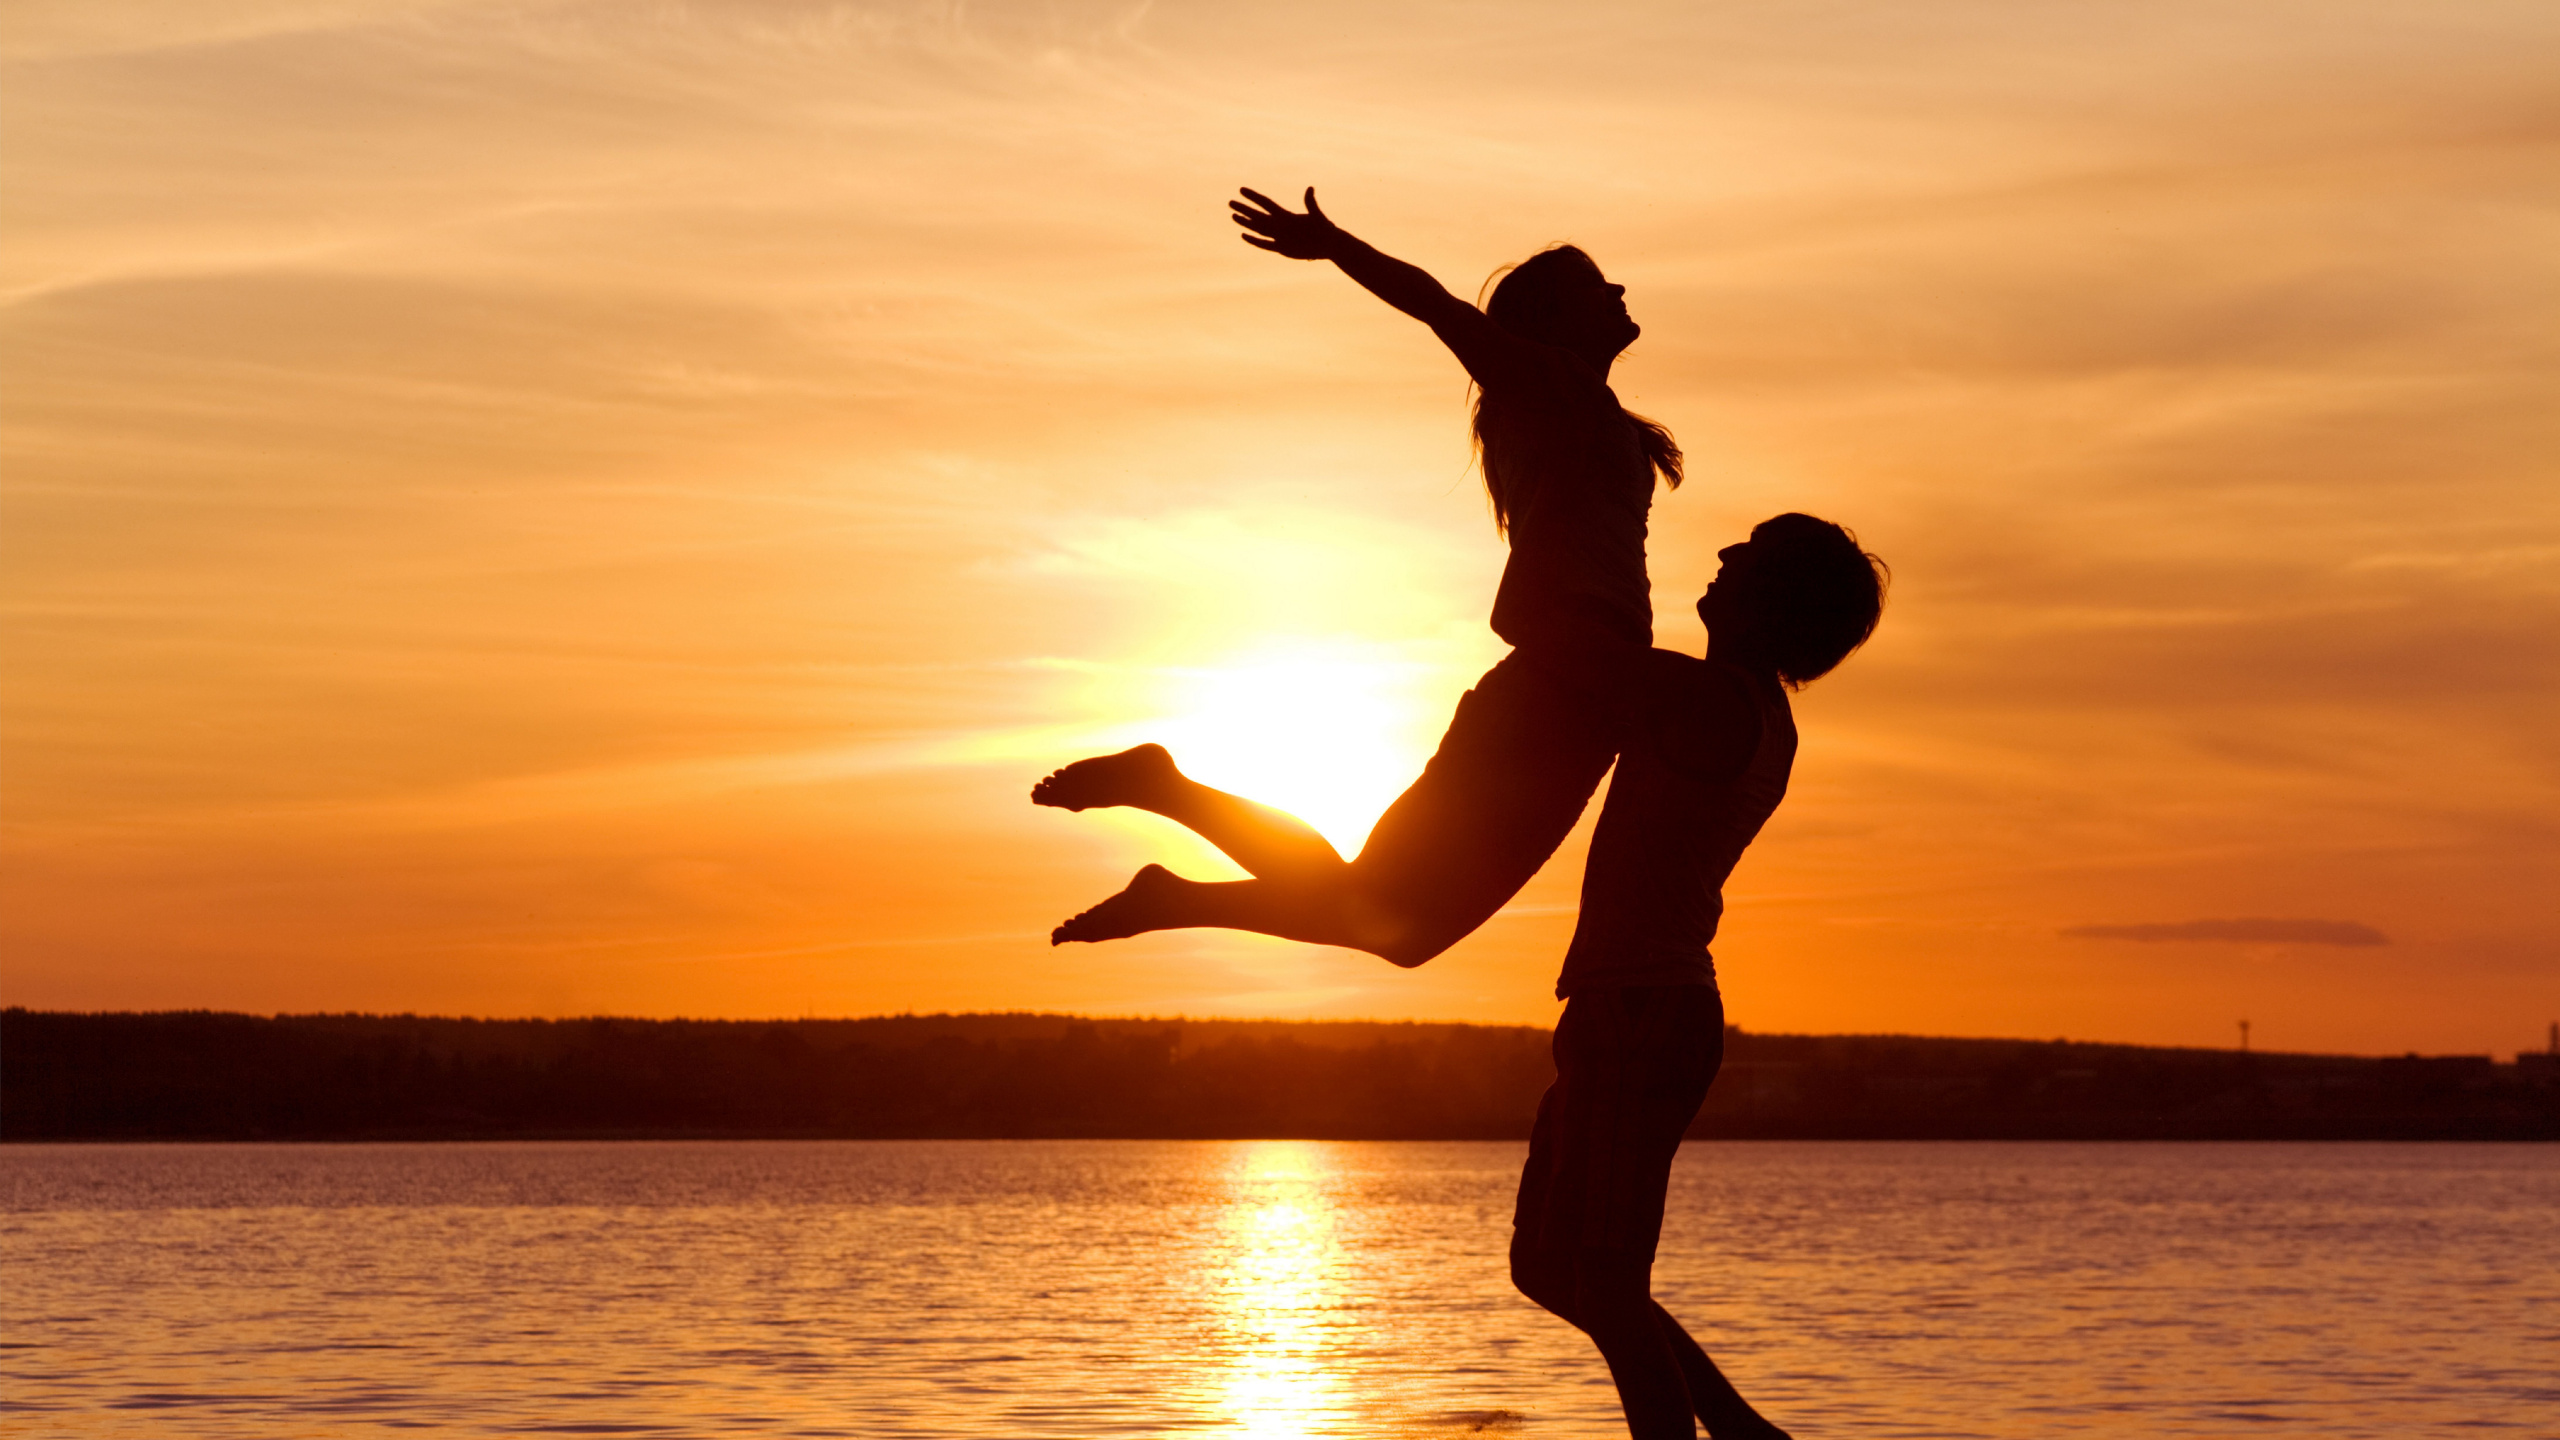 浪漫, 日落, 乐趣, 跳跃, 度假 壁纸 2560x1440 允许